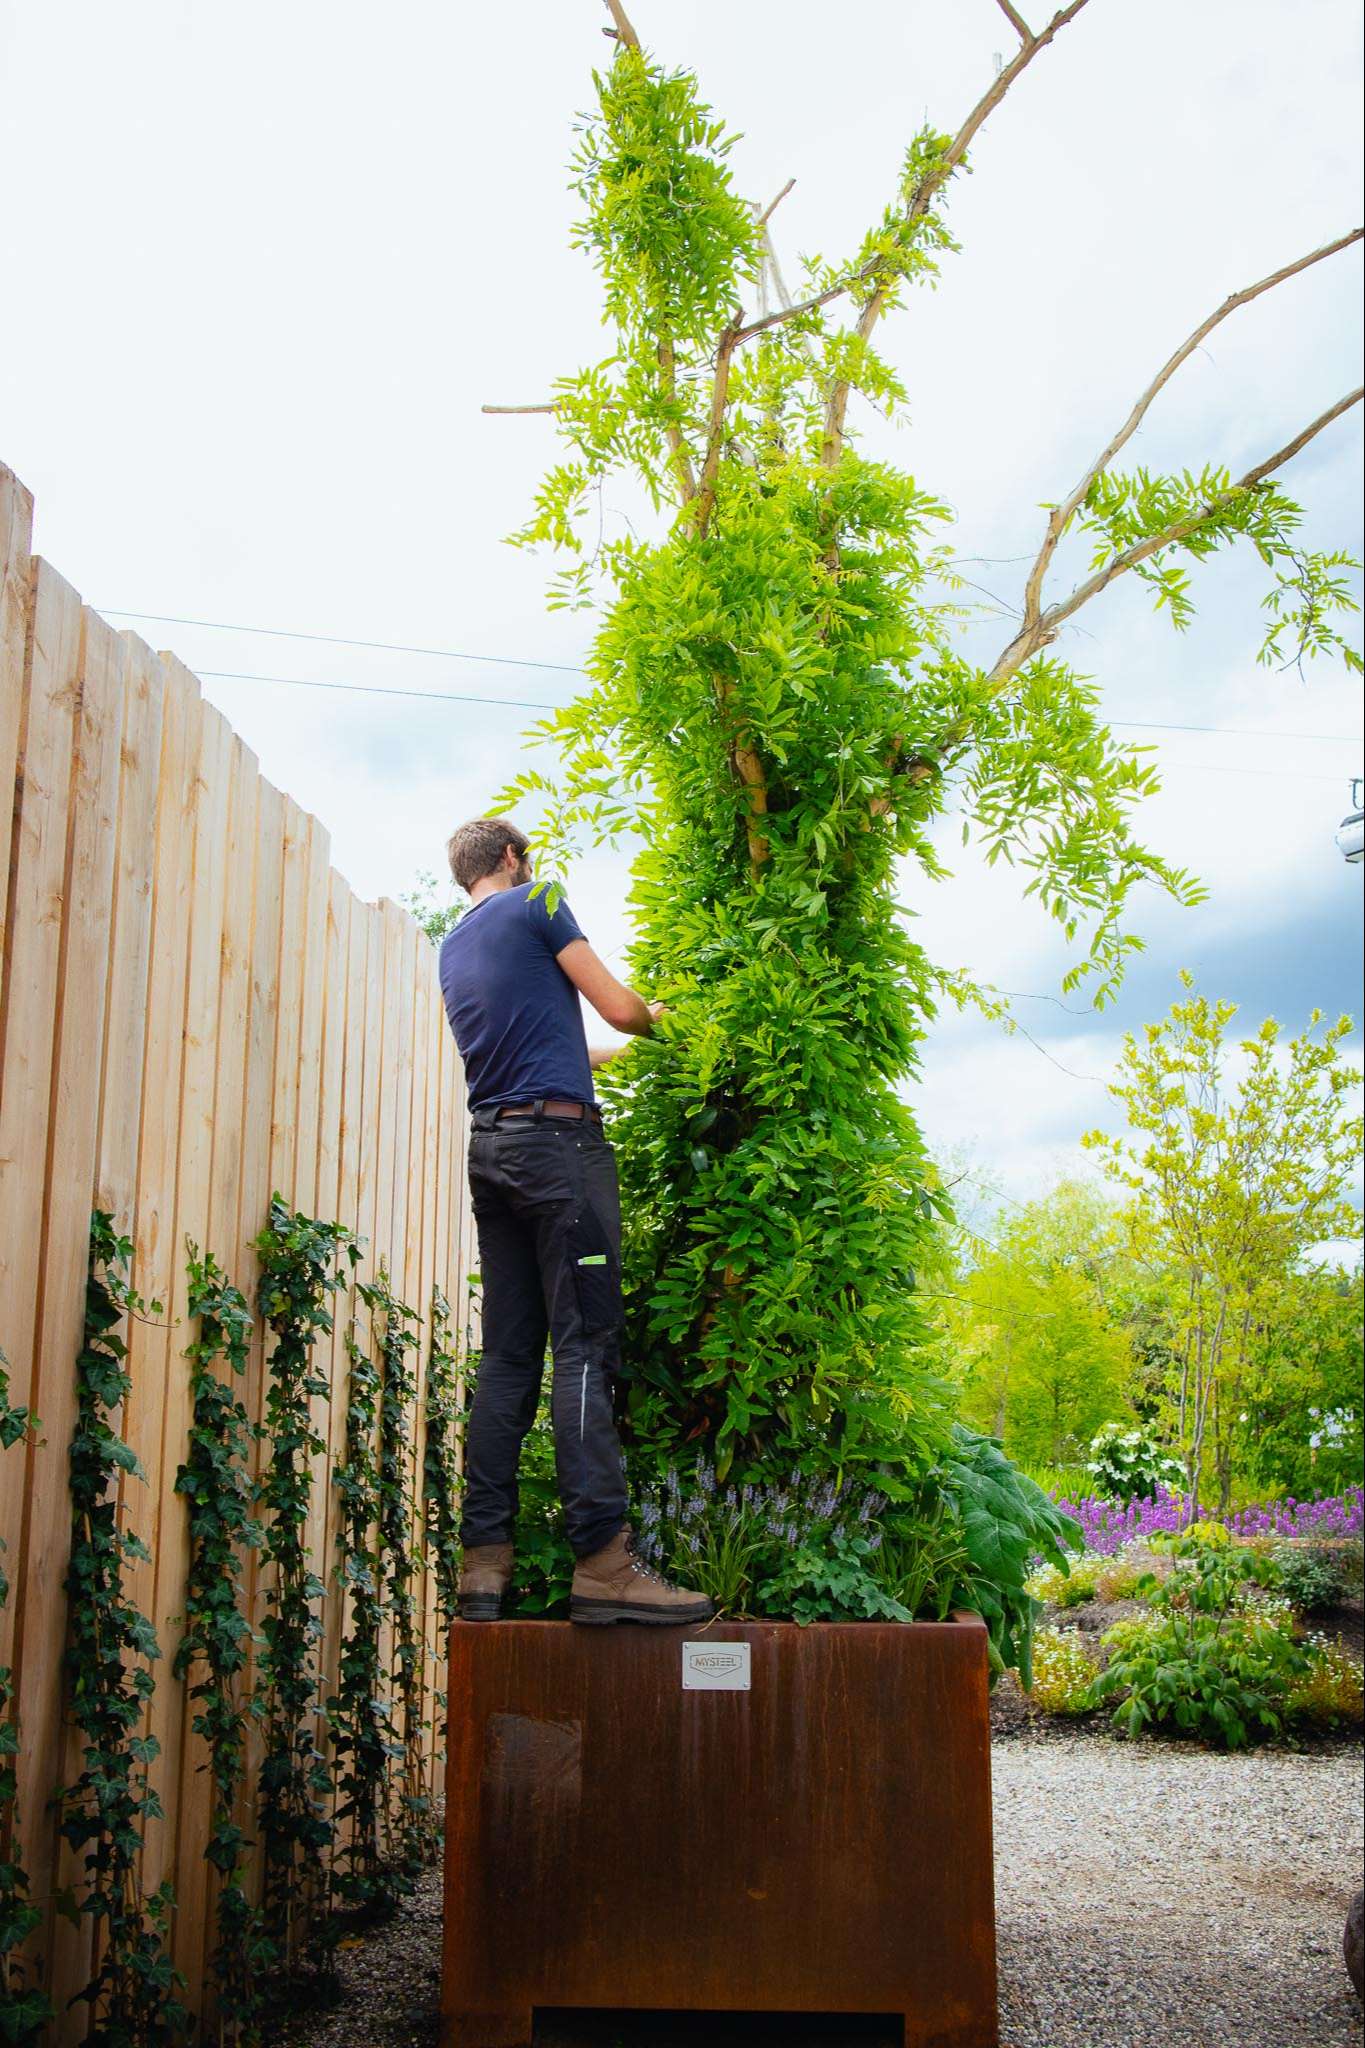 Chris Meeuwsen staat de planten van een Urban Tree te verzorgen bovenop een plantenbak